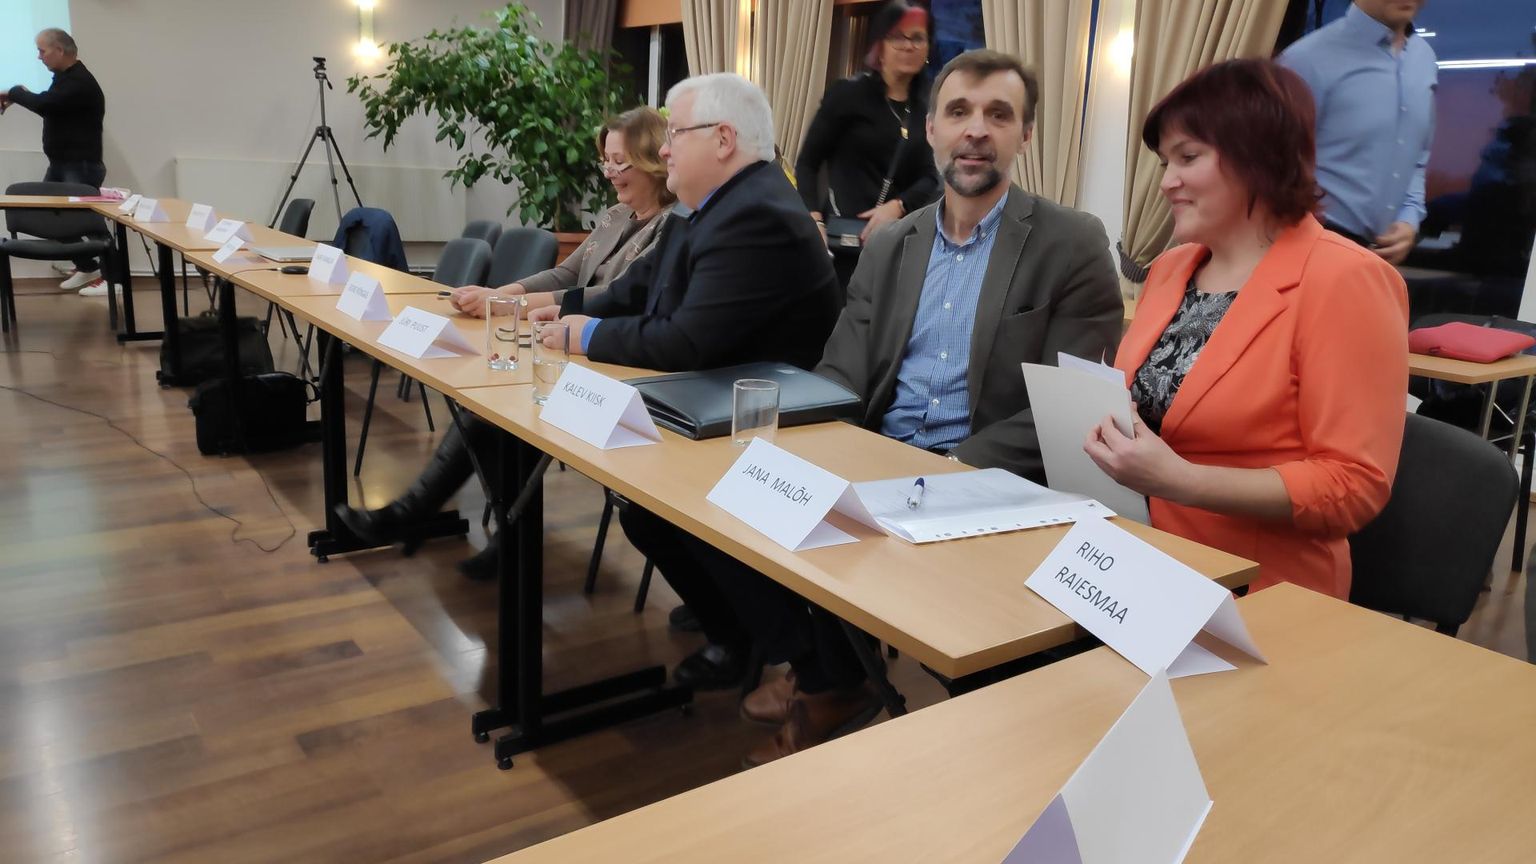 Tori vallavolikogu esimesel istungil hääletati volikogu aseesimeheks Kalev Kiisk ja esimeheks Jana Malõh valimisliidust Koduvald.